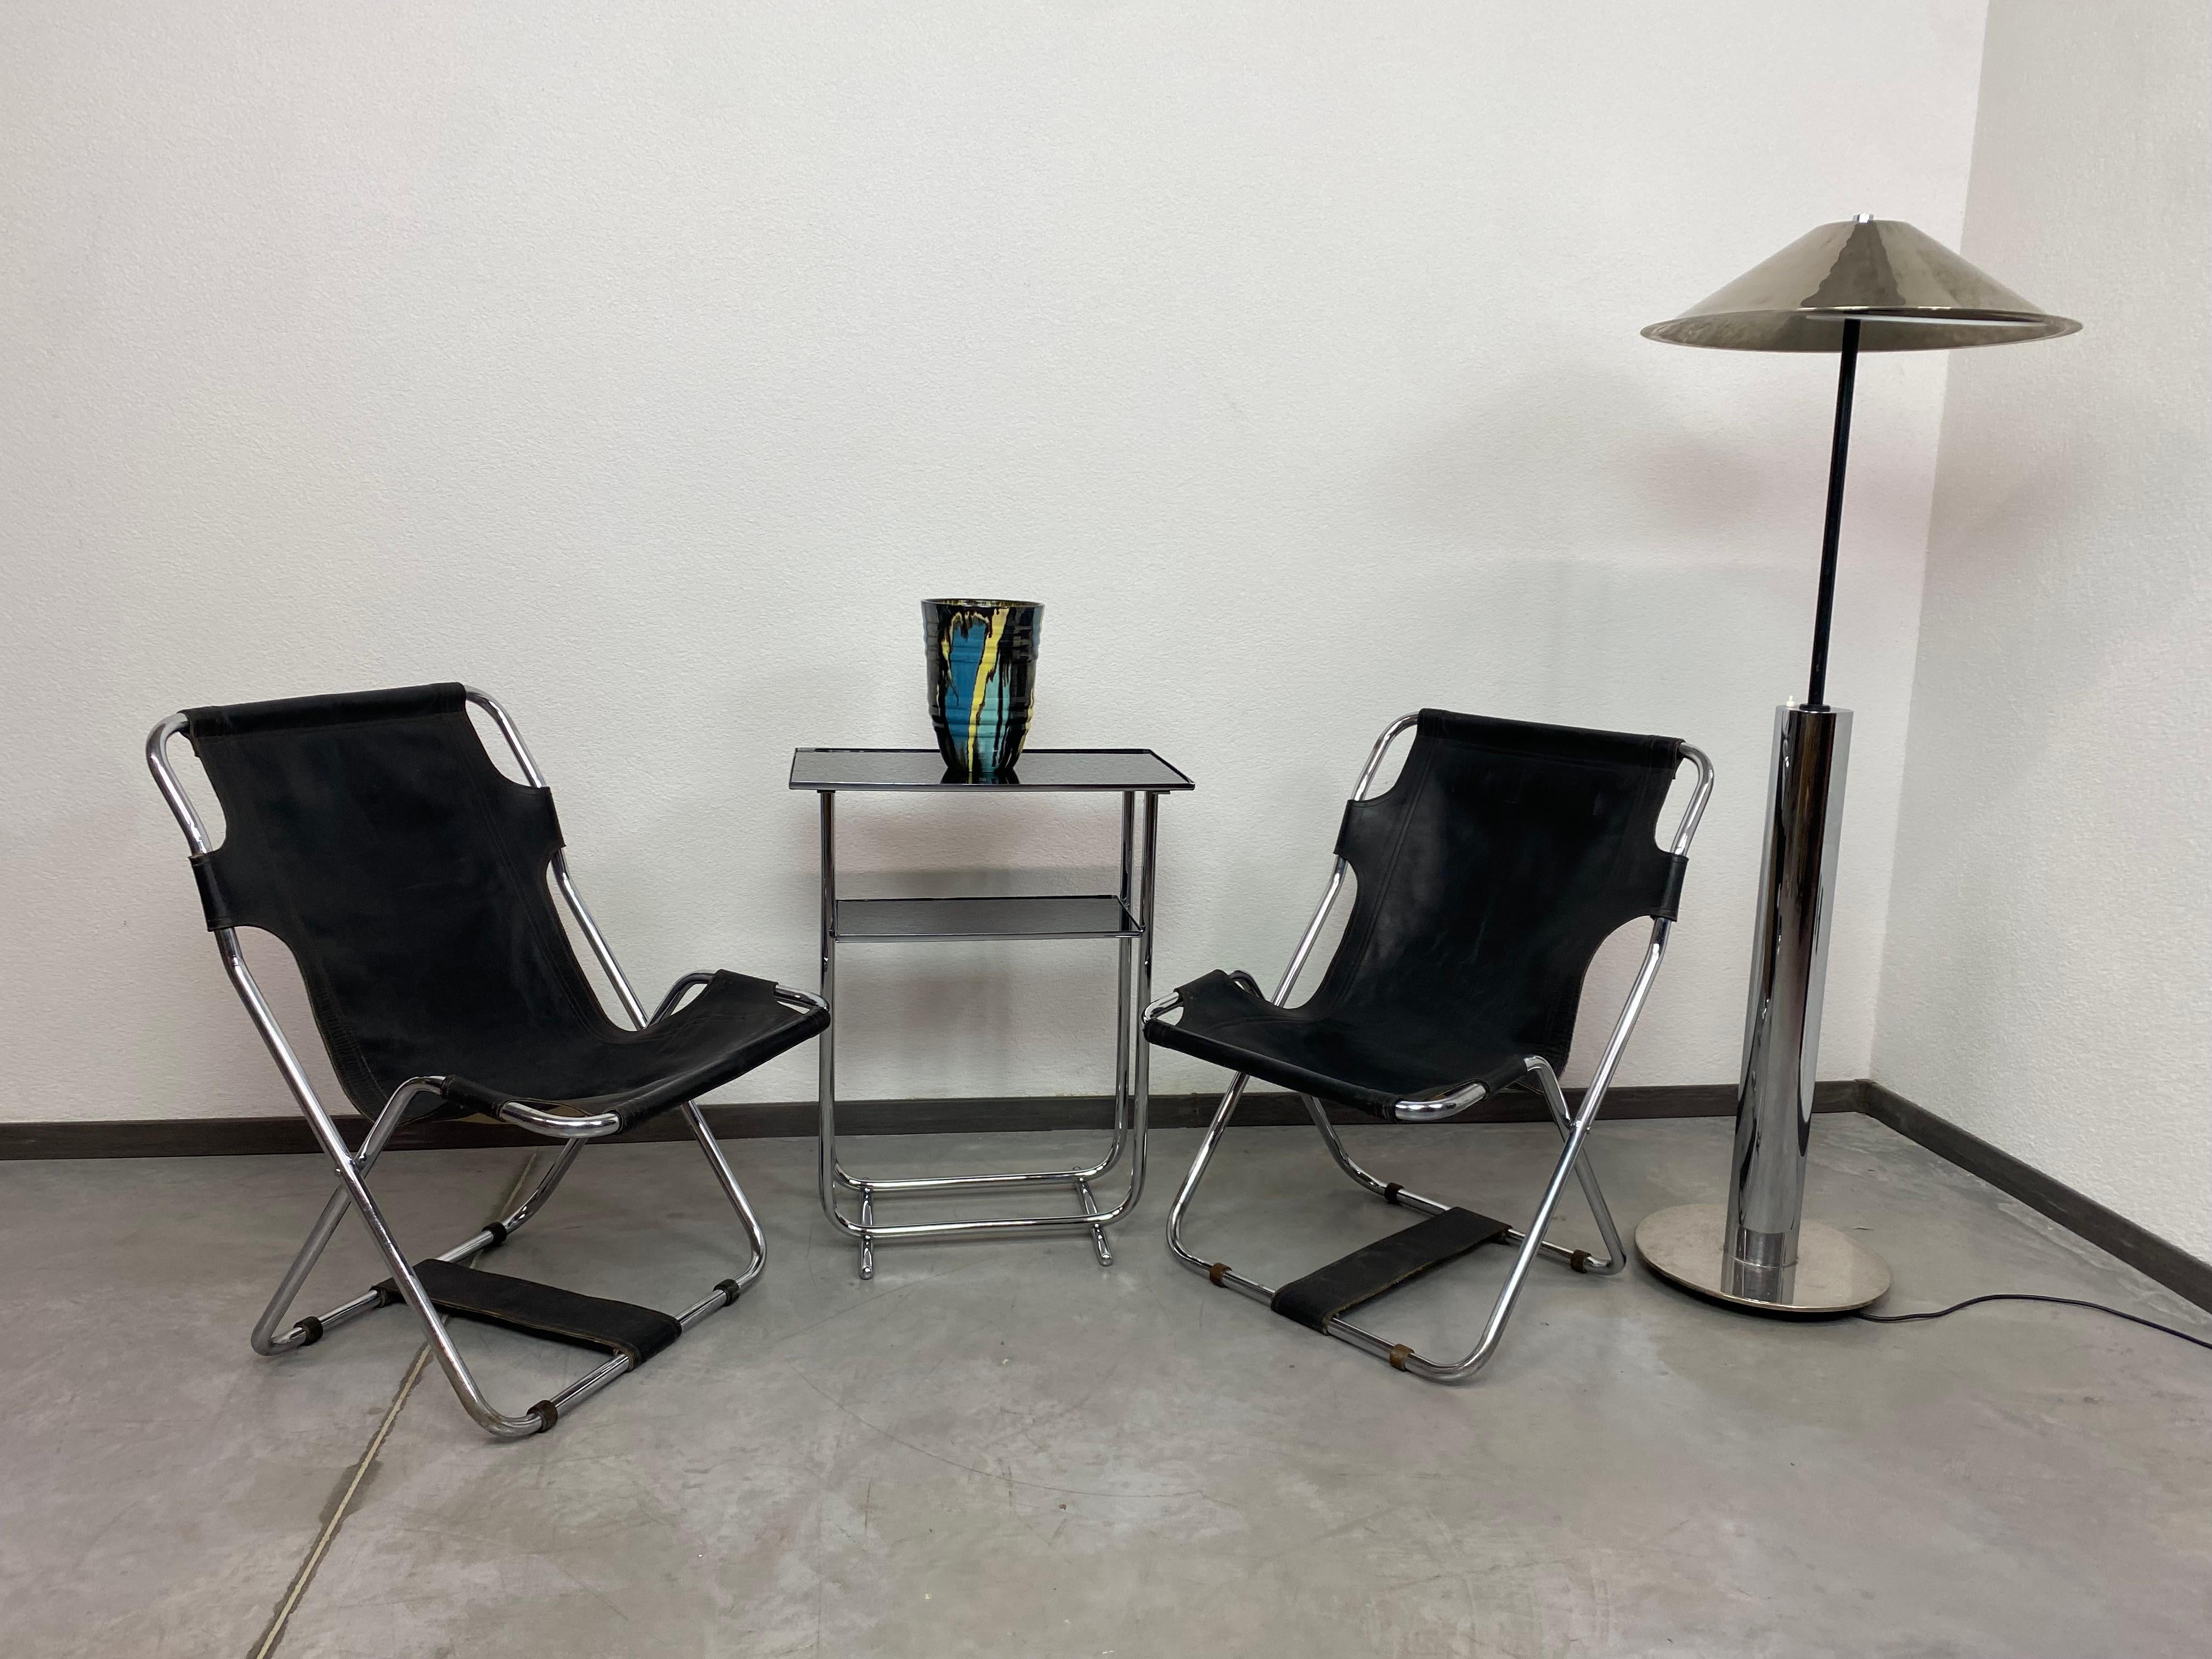 Chaises pliantes en cuir de style Bauhaus datant d'environ 1960 en très bel état d'origine avec de légères traces d'utilisation.